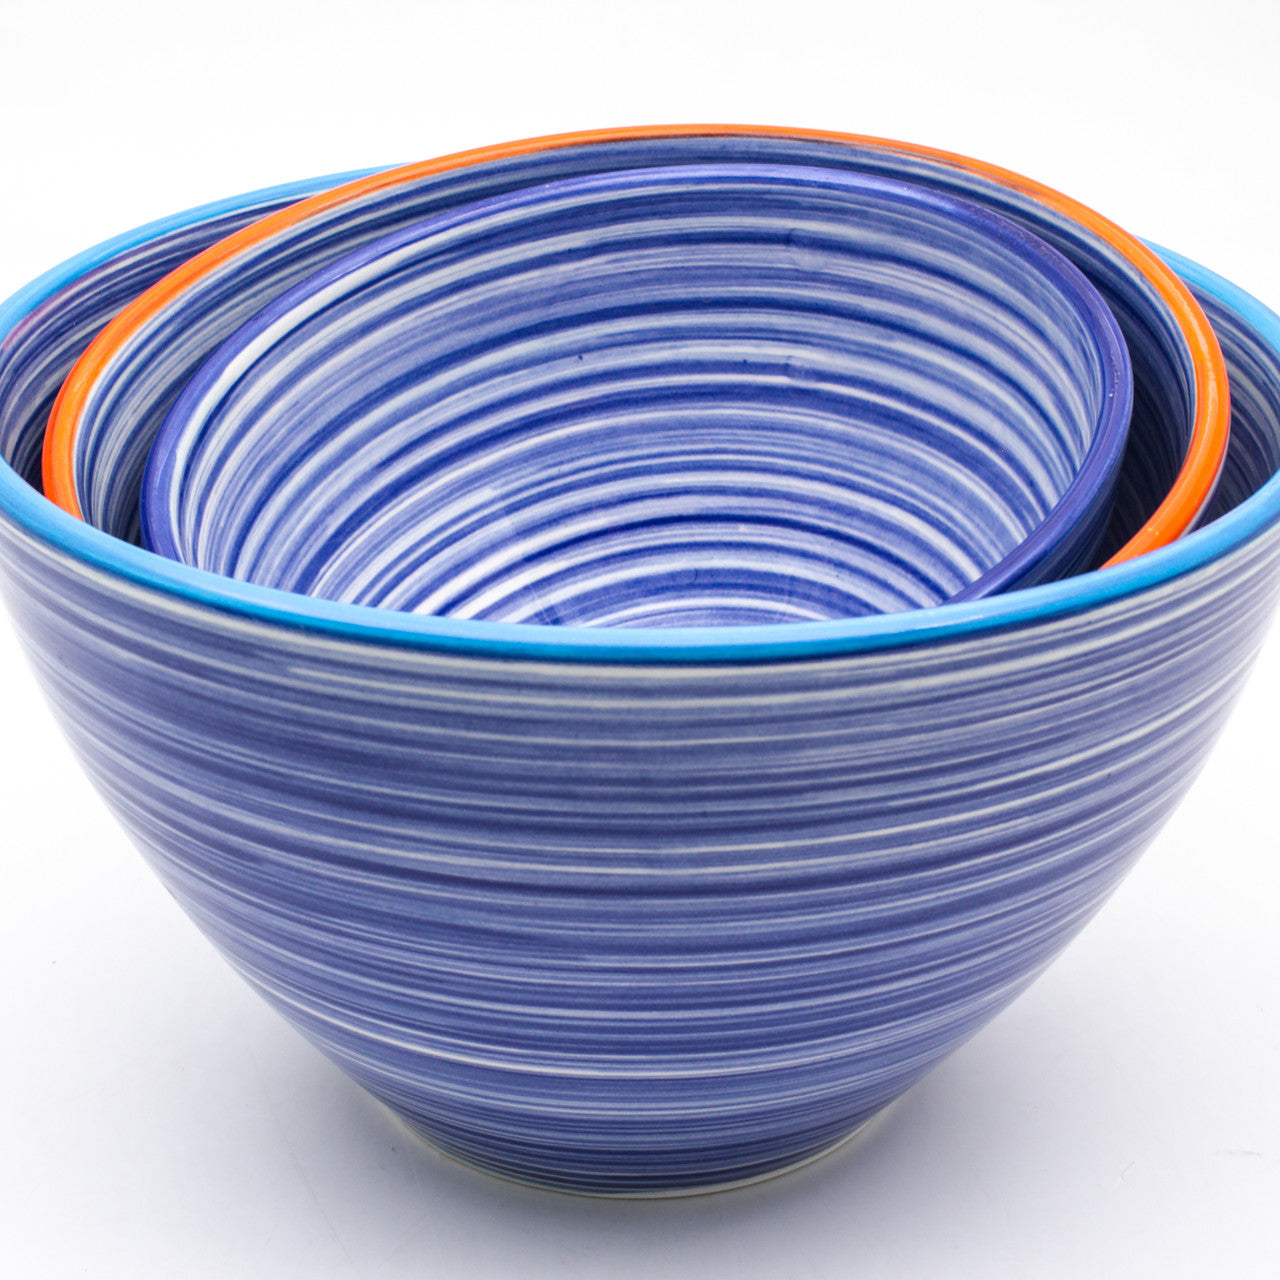 Raia 3 Piece Assorted Stacking Bowl Set - Euro Ceramica 